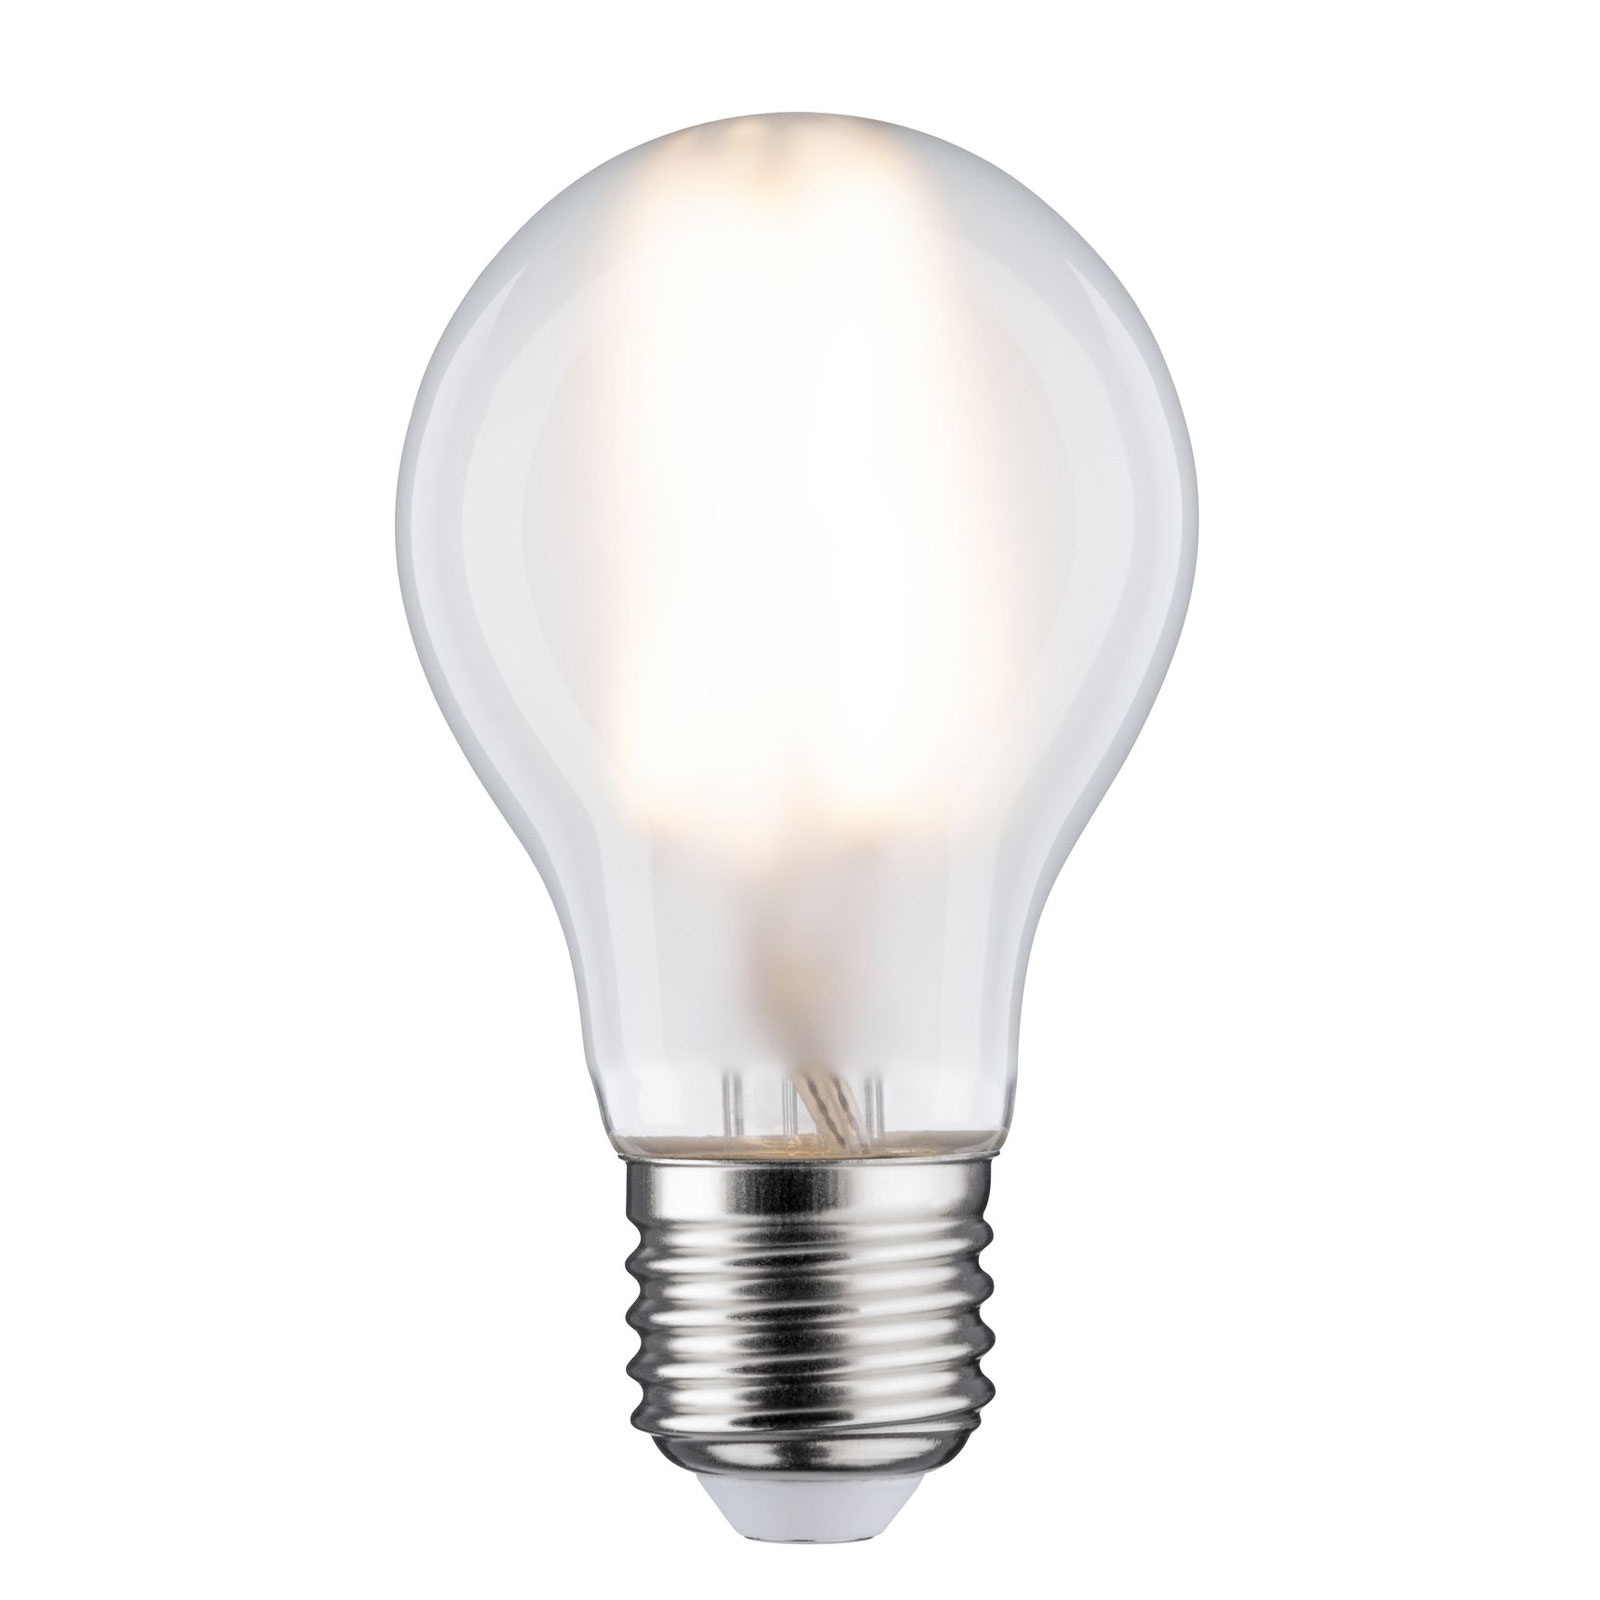 LED bulb E27 7W warm white 3,000K 805 lumens matt